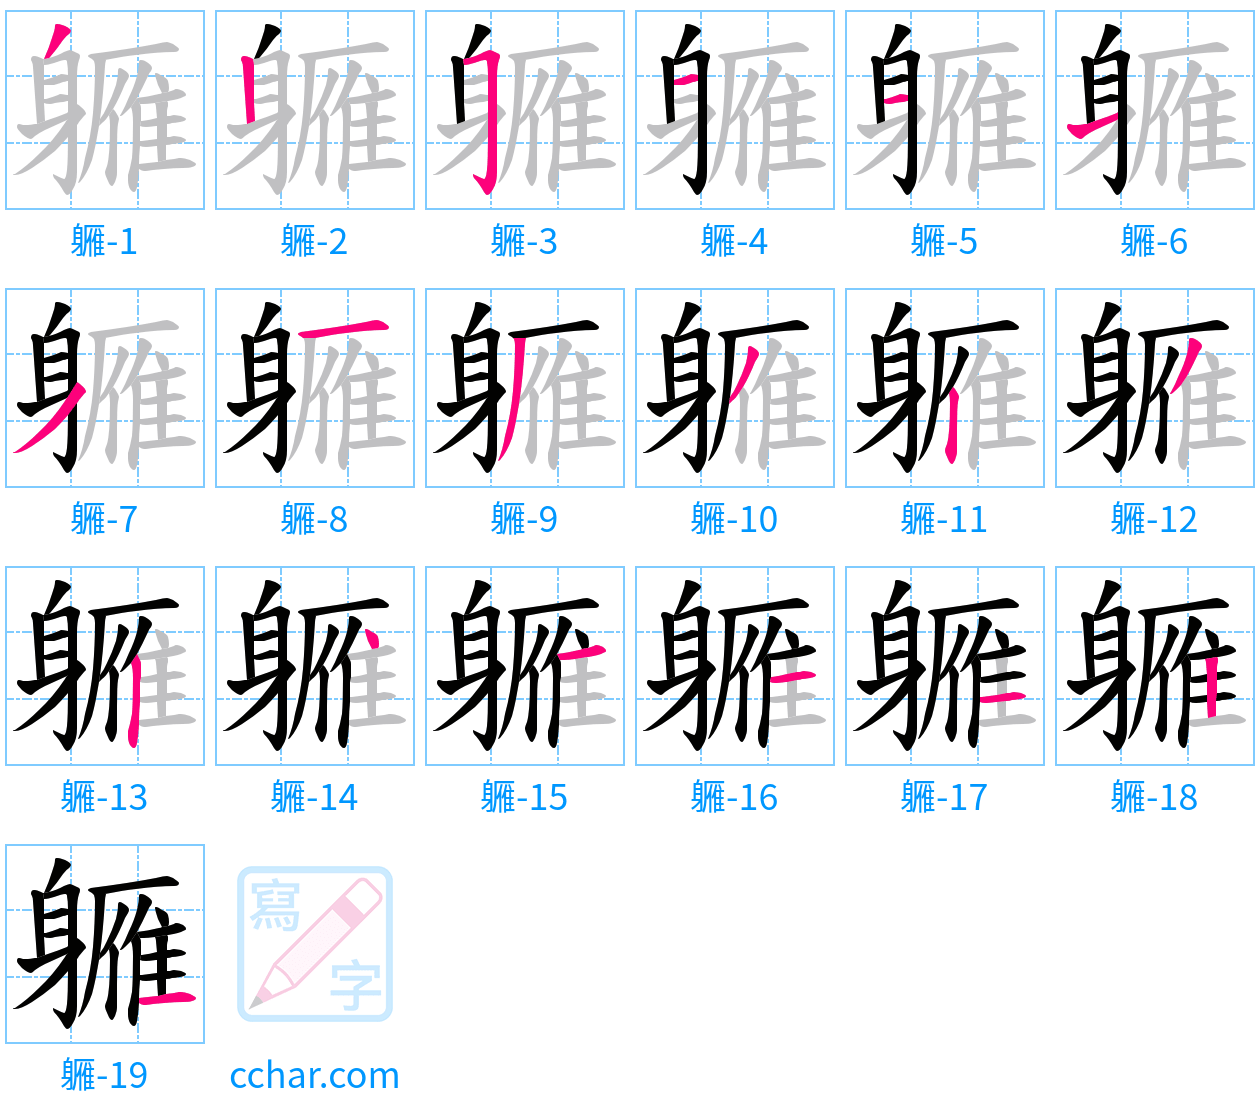 軅 stroke order step-by-step diagram